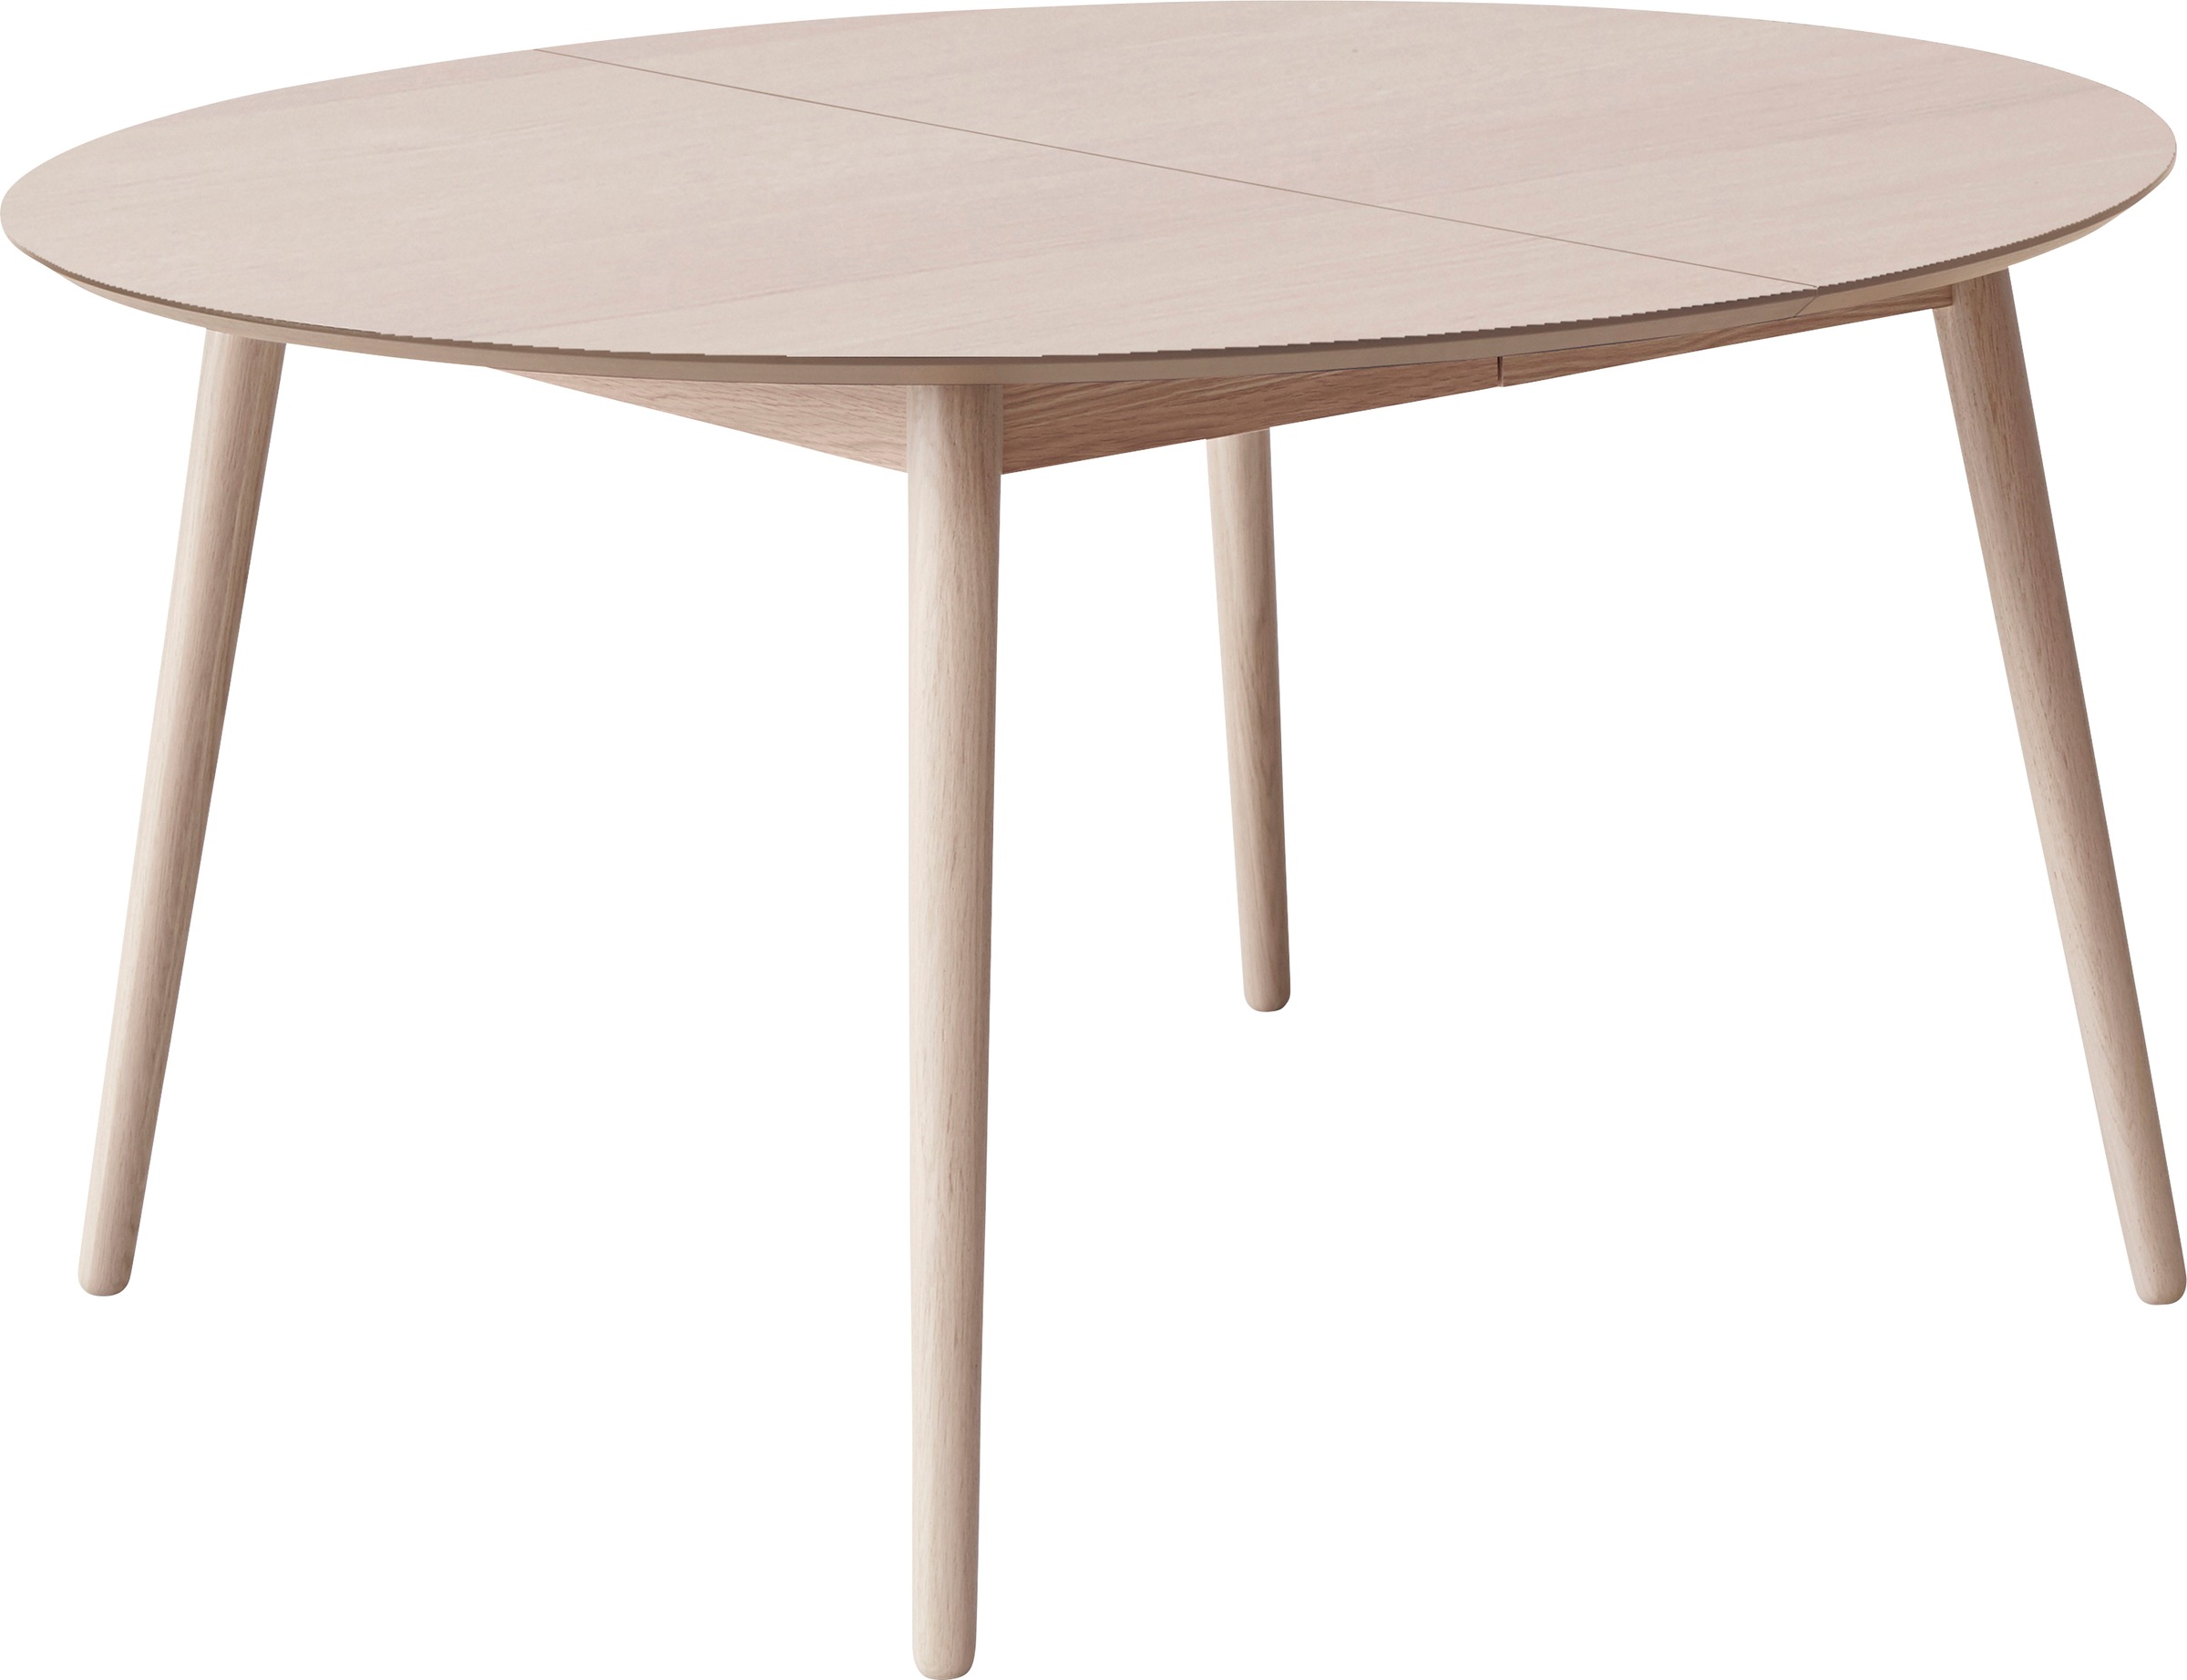 Hammel Furniture Esstisch »Meza by Hammel«, Ø135(231) cm, runde Tischplatte aus...